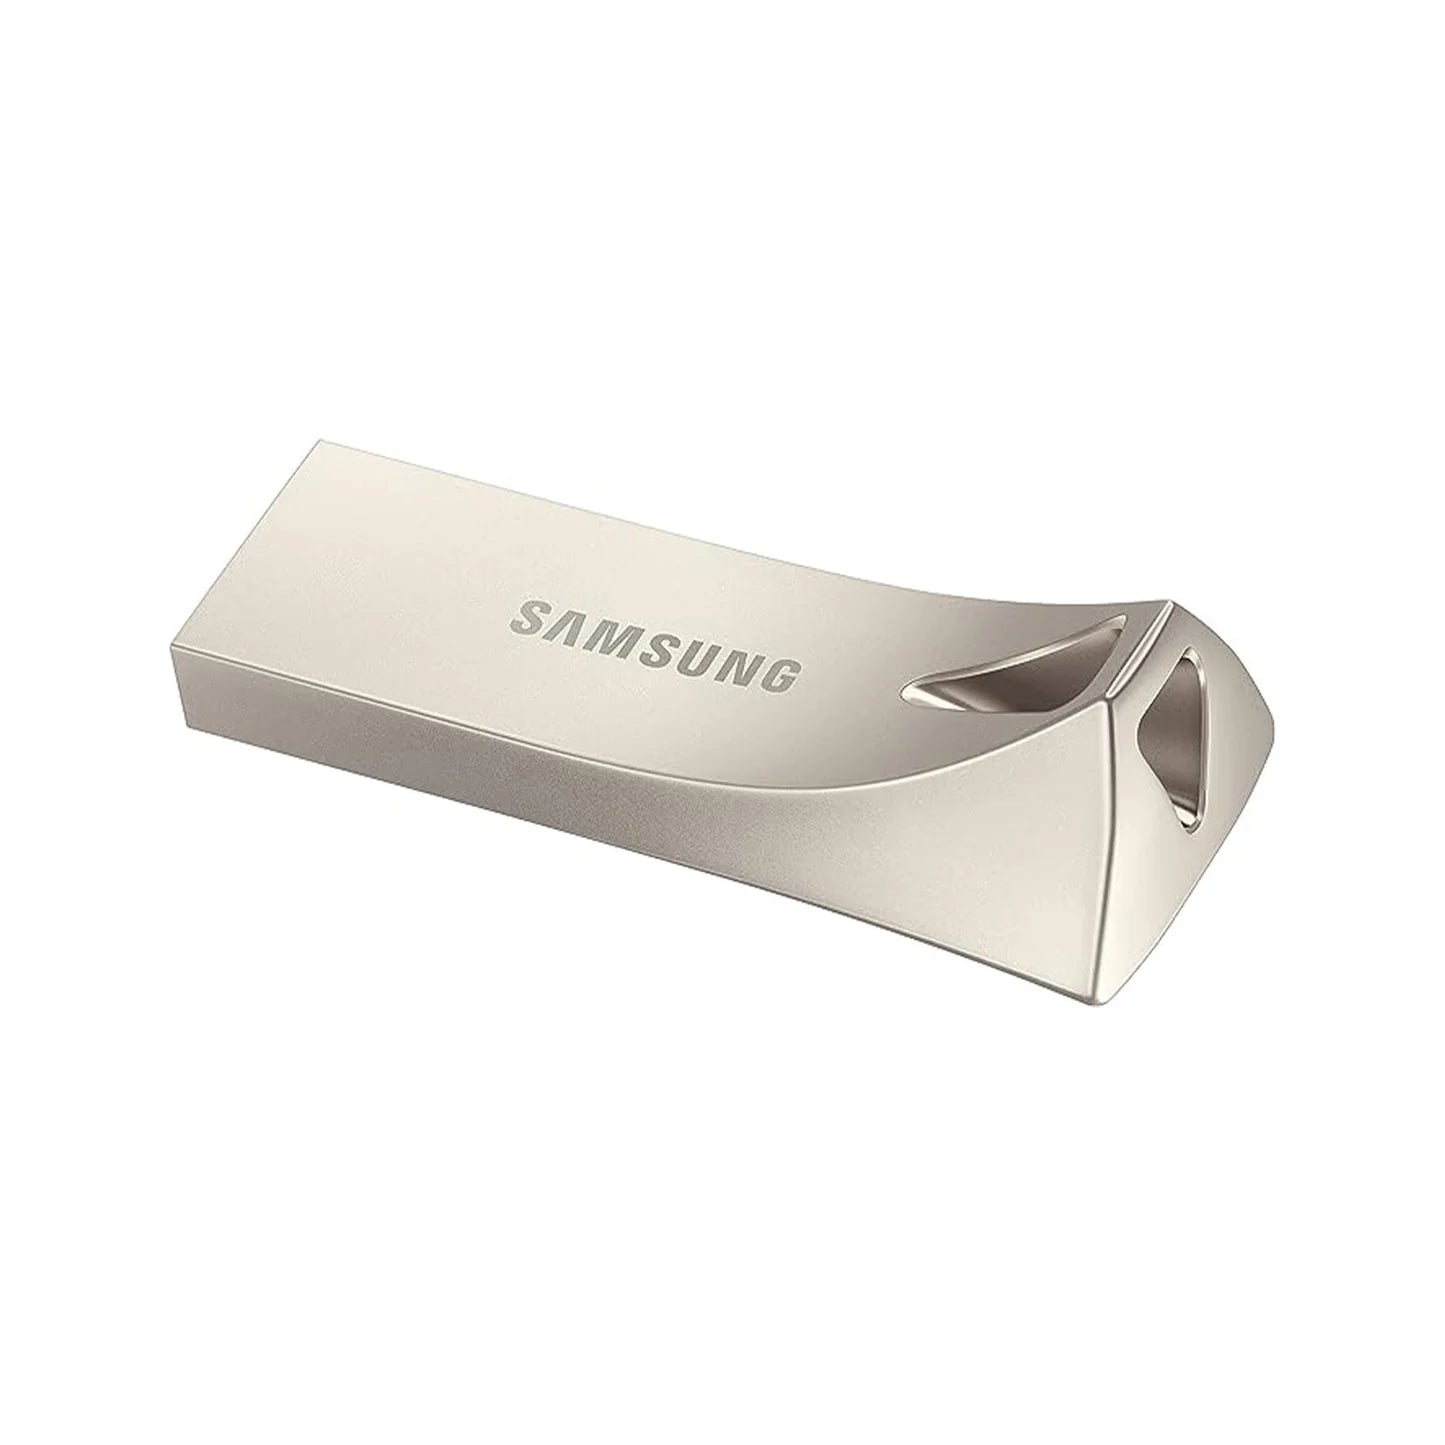 سامسونج بار بلس 64 جيجابايت - 300 ميجابايت/ثانية USB 3.1 فلاش درايف، فضي (MUF-64BE3/AM) 